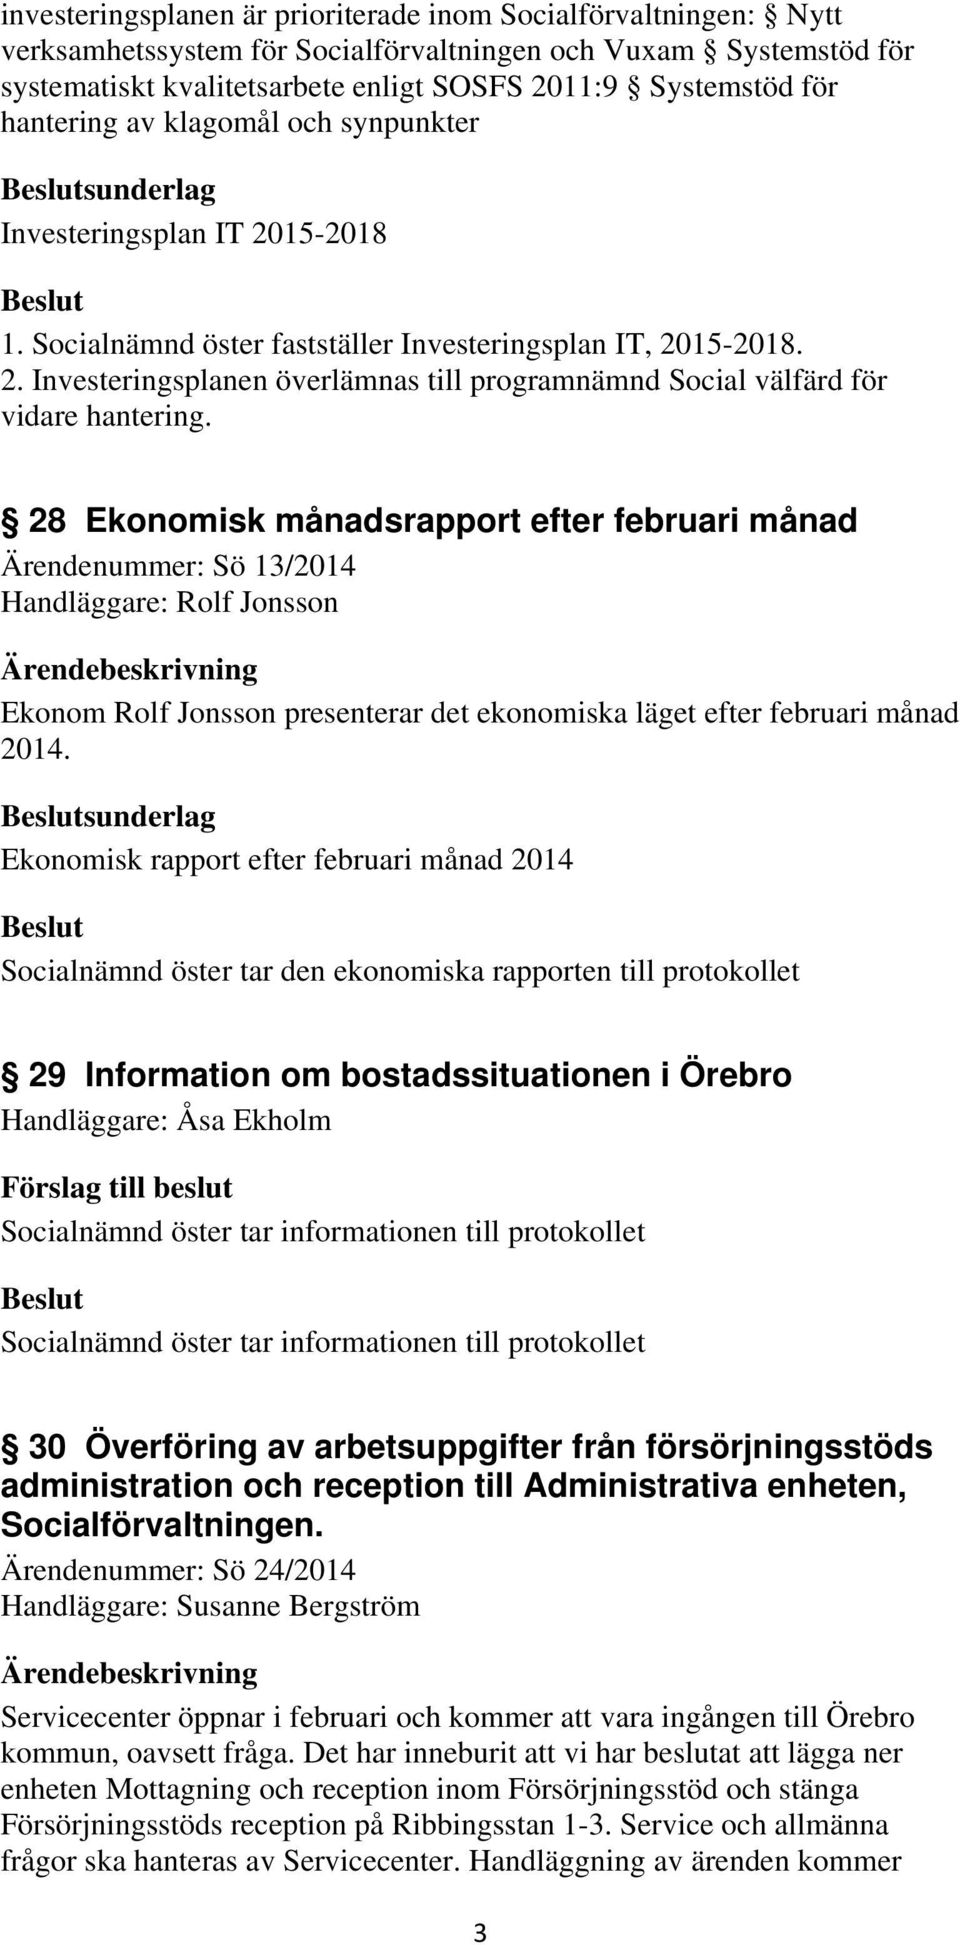 28 Ekonomisk månadsrapport efter februari månad Ärendenummer: Sö 13/2014 Handläggare: Rolf Jonsson Ekonom Rolf Jonsson presenterar det ekonomiska läget efter februari månad 2014.